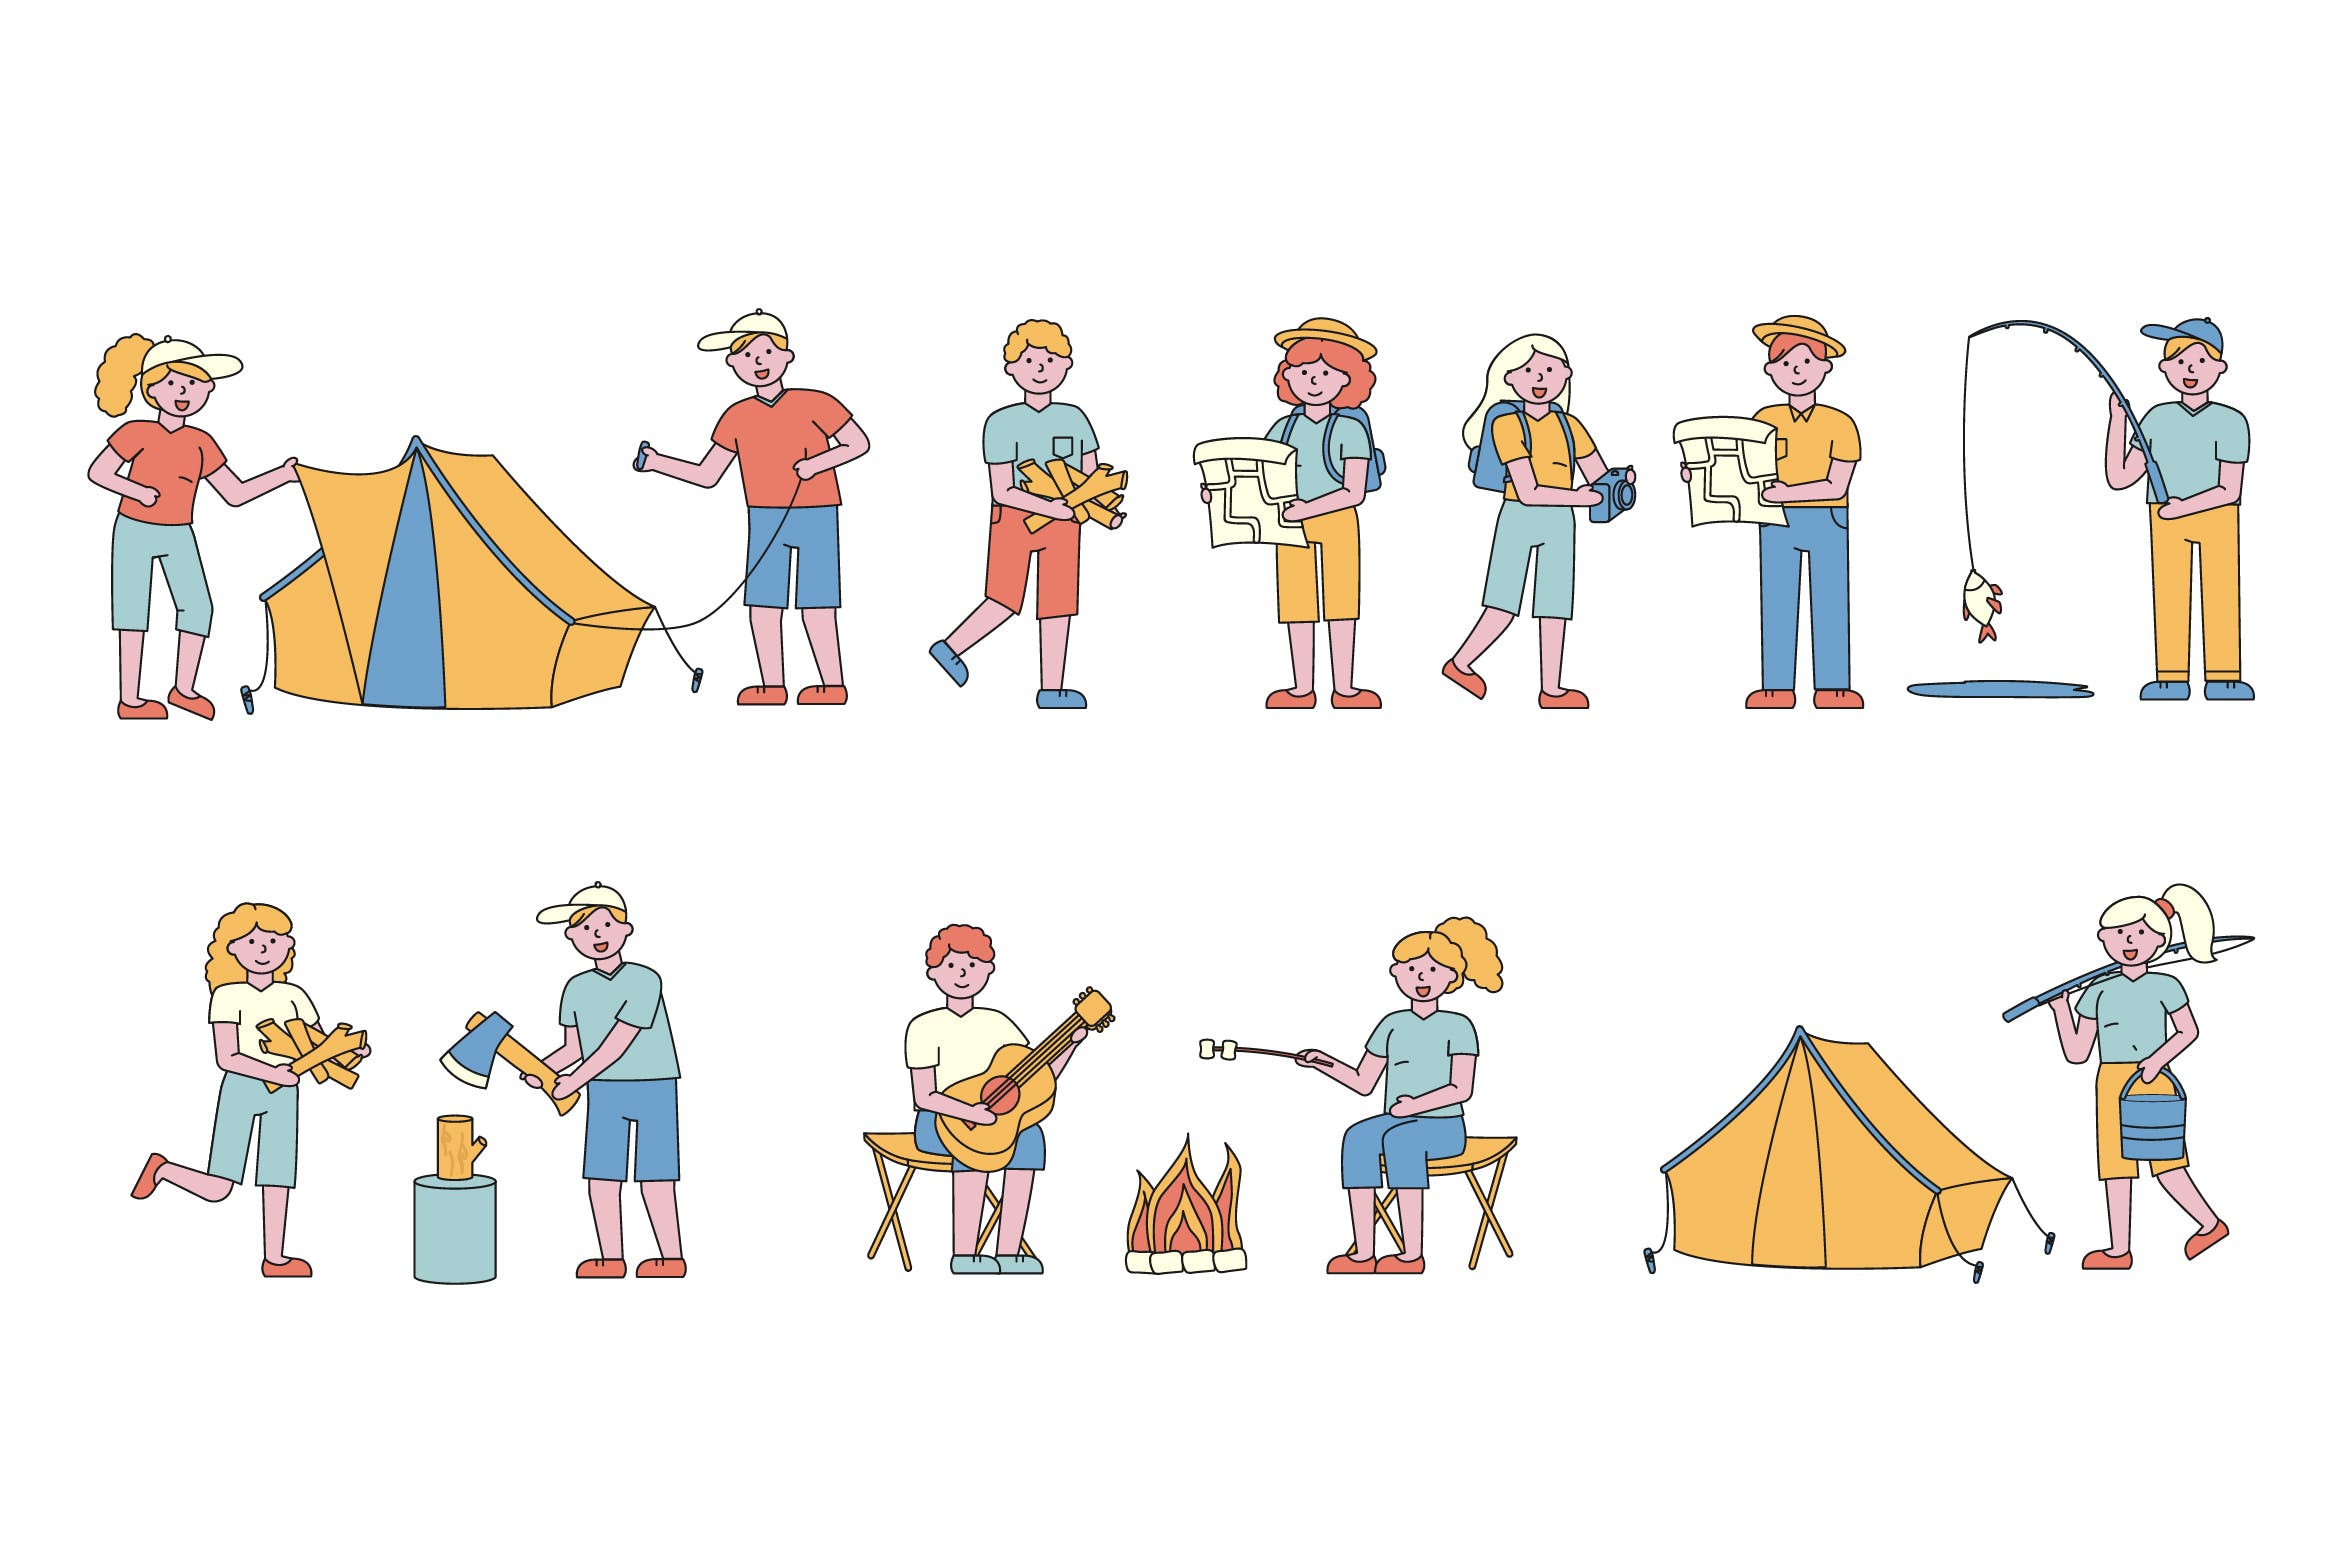 野营户外运动主题人物形象线条艺术矢量插画第一素材精选素材 Campers Lineart People Character Collection插图